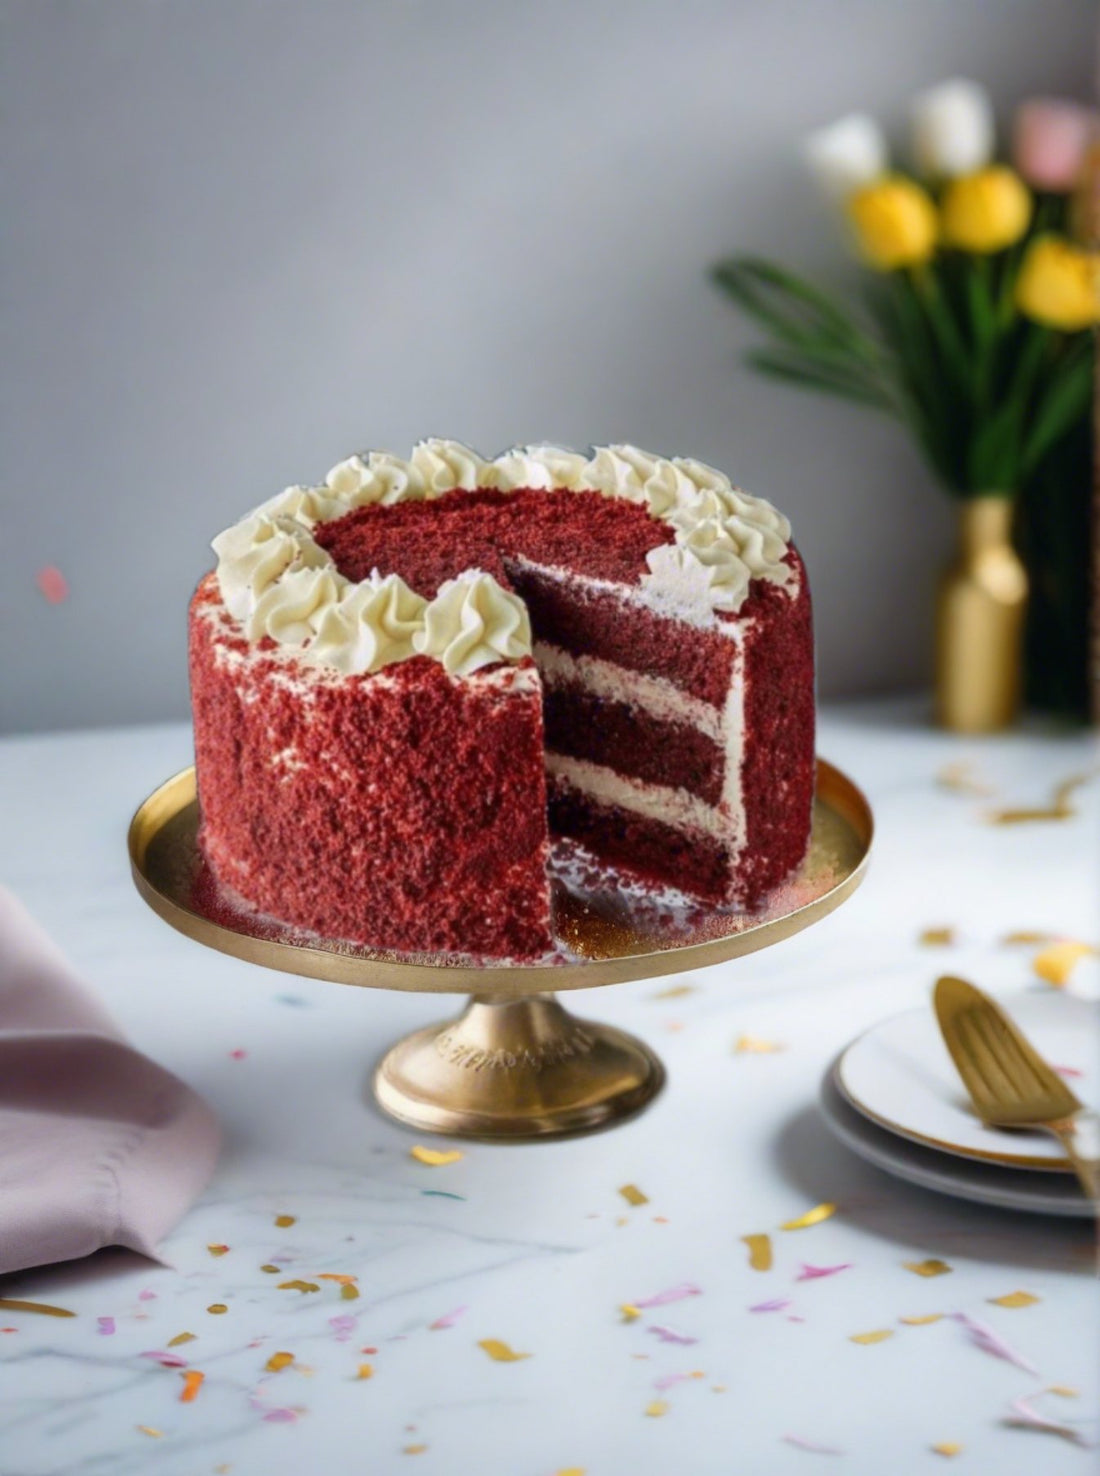 Why Choose Our Red Velvet Cake? - Patisserie Valerie